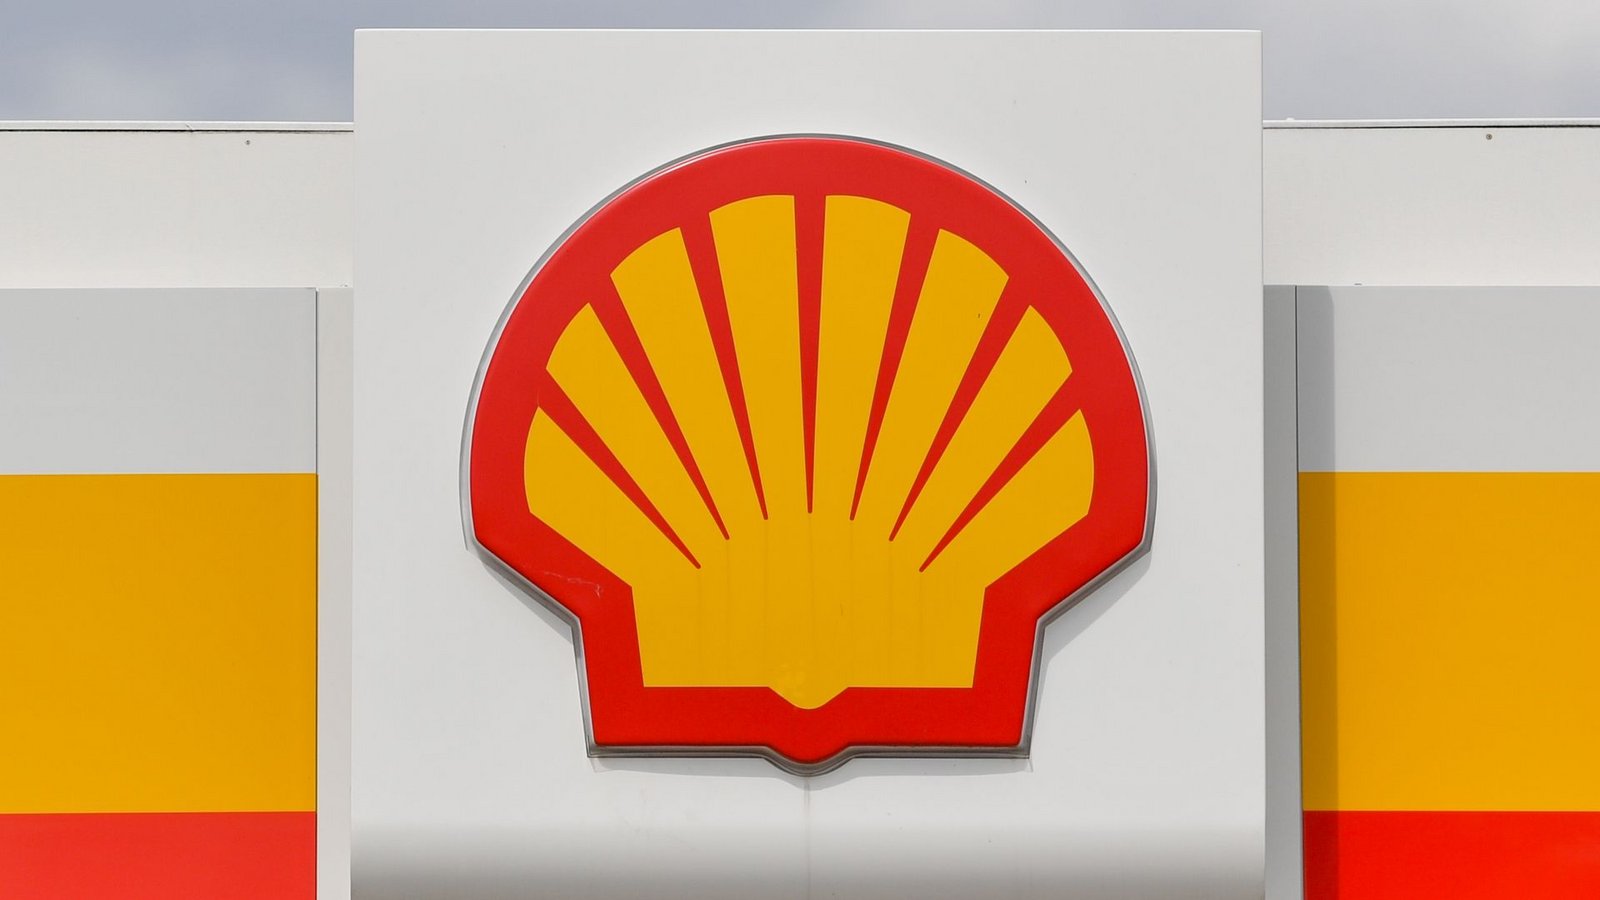 Der Ölriese Shell hat seinen Gewinn innerhalb eines Jahres etwa verdoppelt.Foto: Patrick Pleul/dpa-Zentralbild/dpa